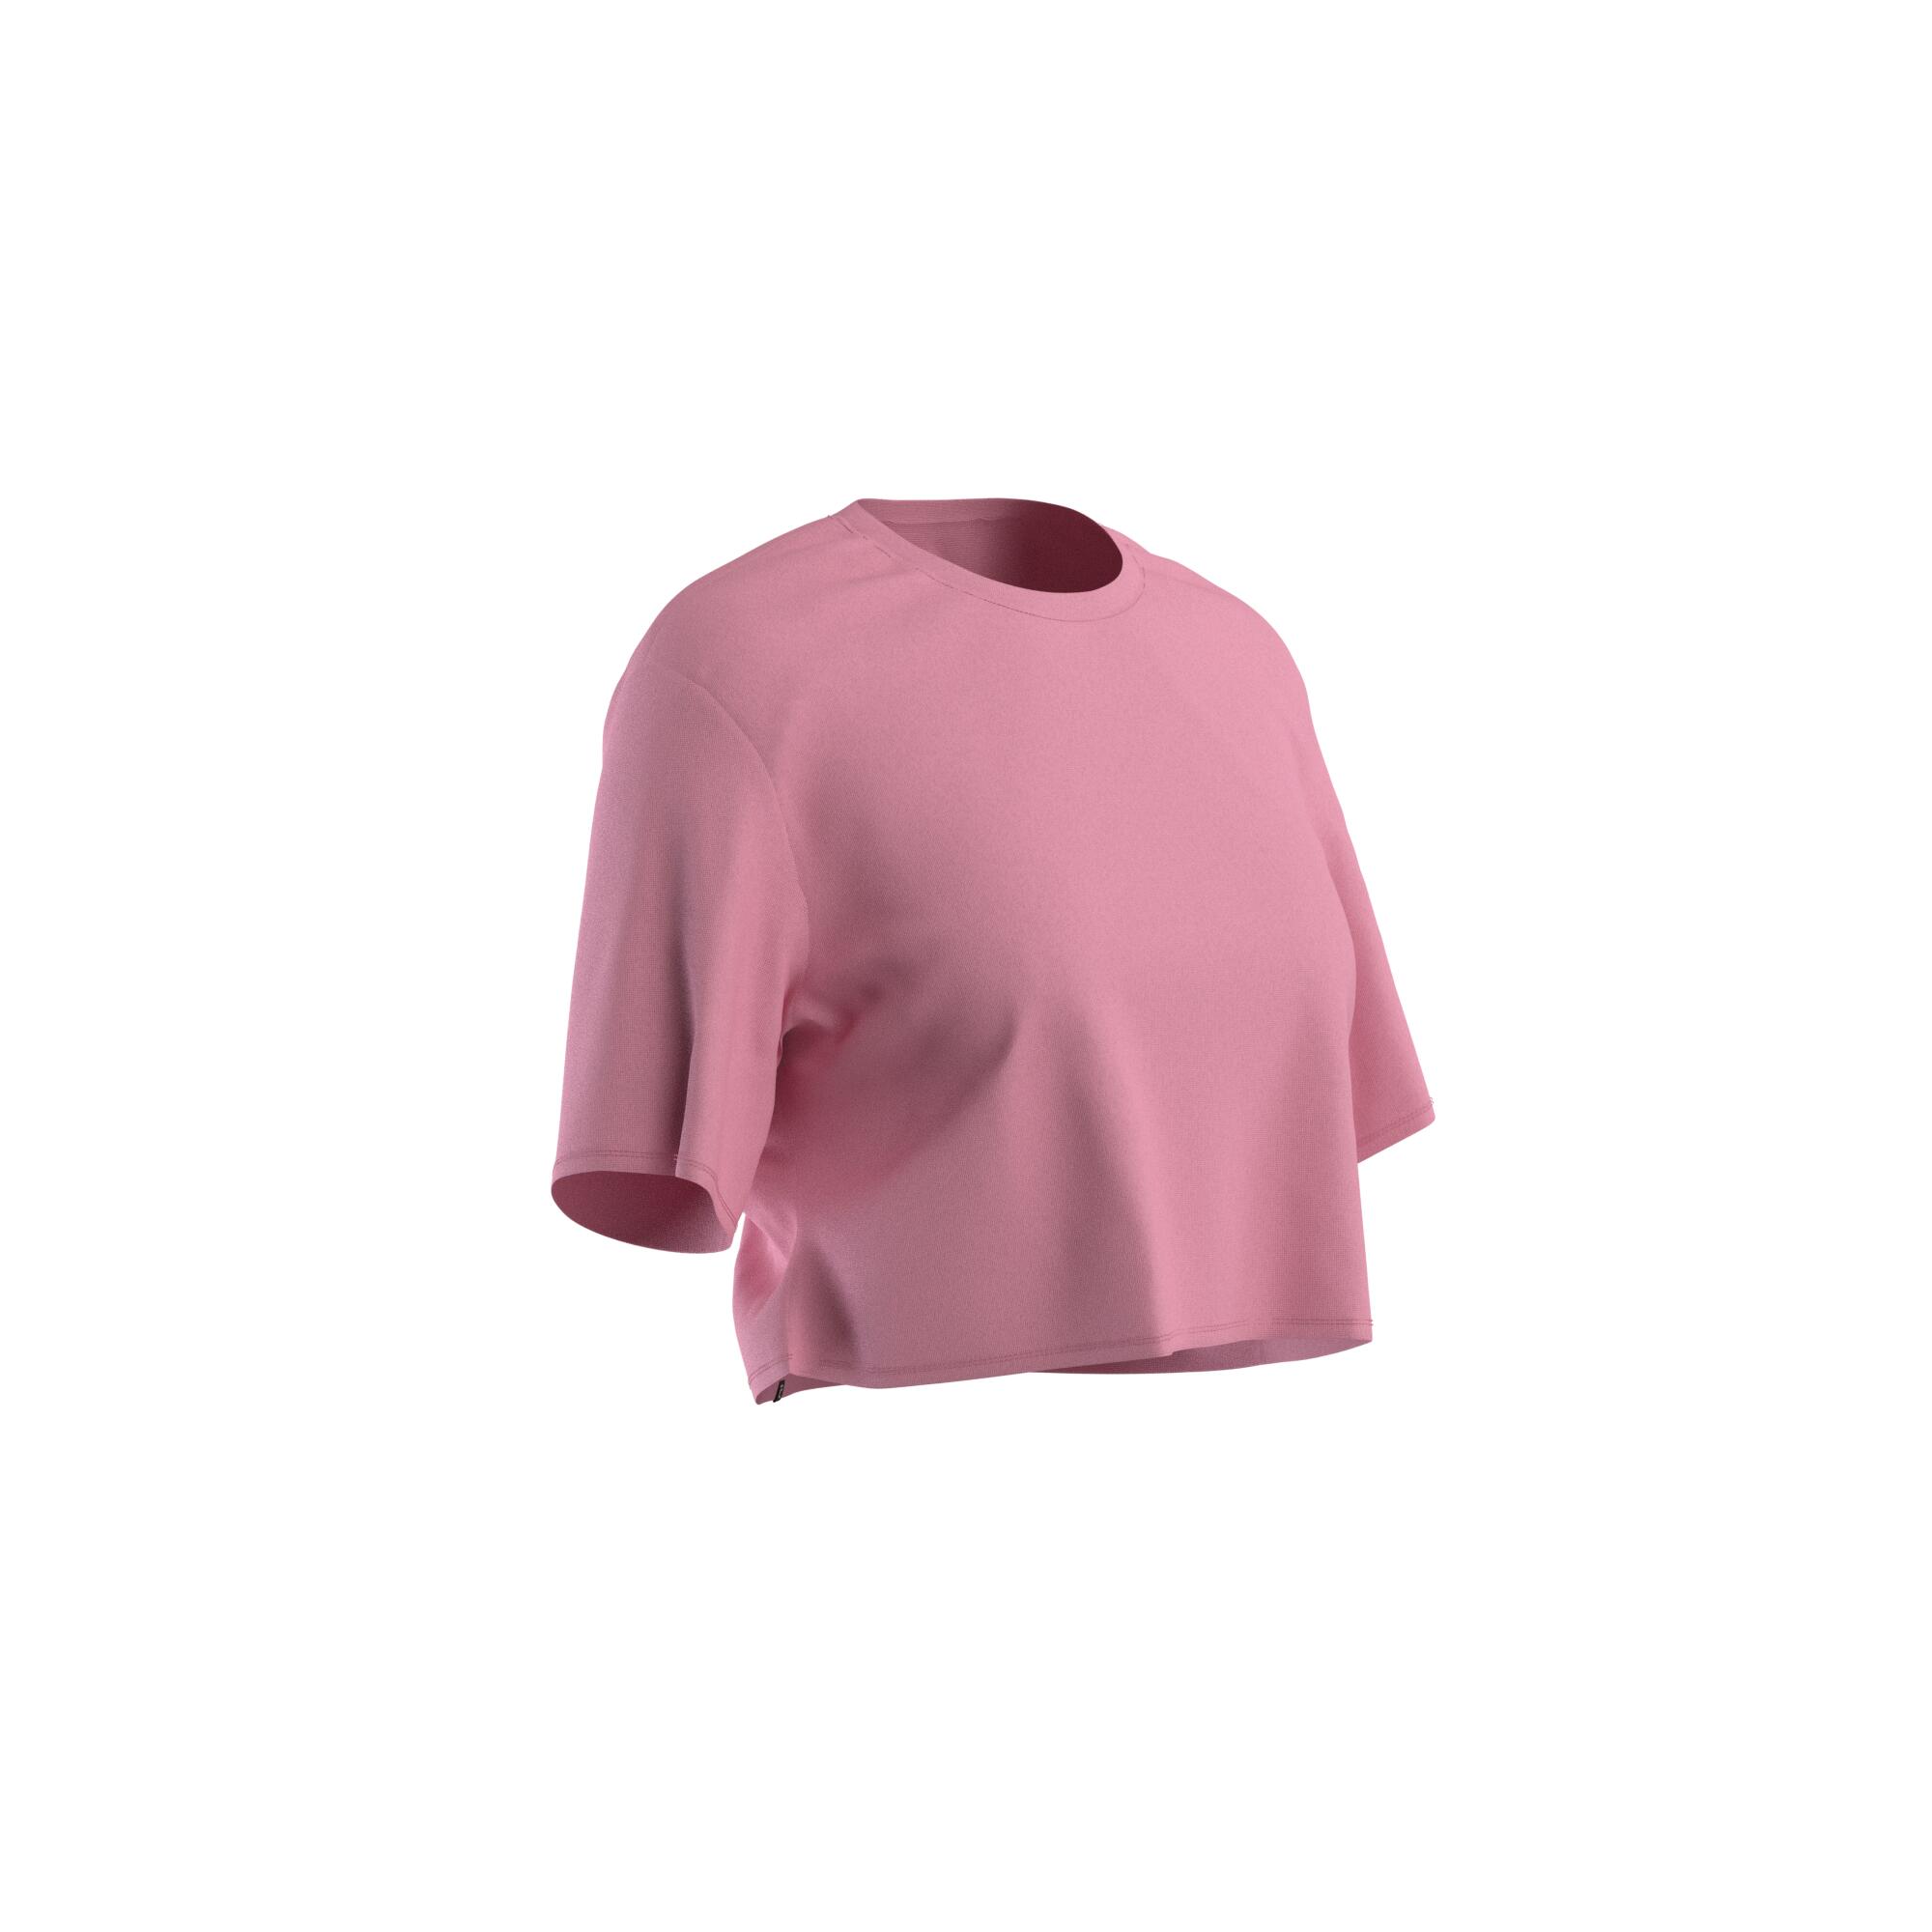 DOMYOS Women's Fitness Crop Top 520 - Light Pink